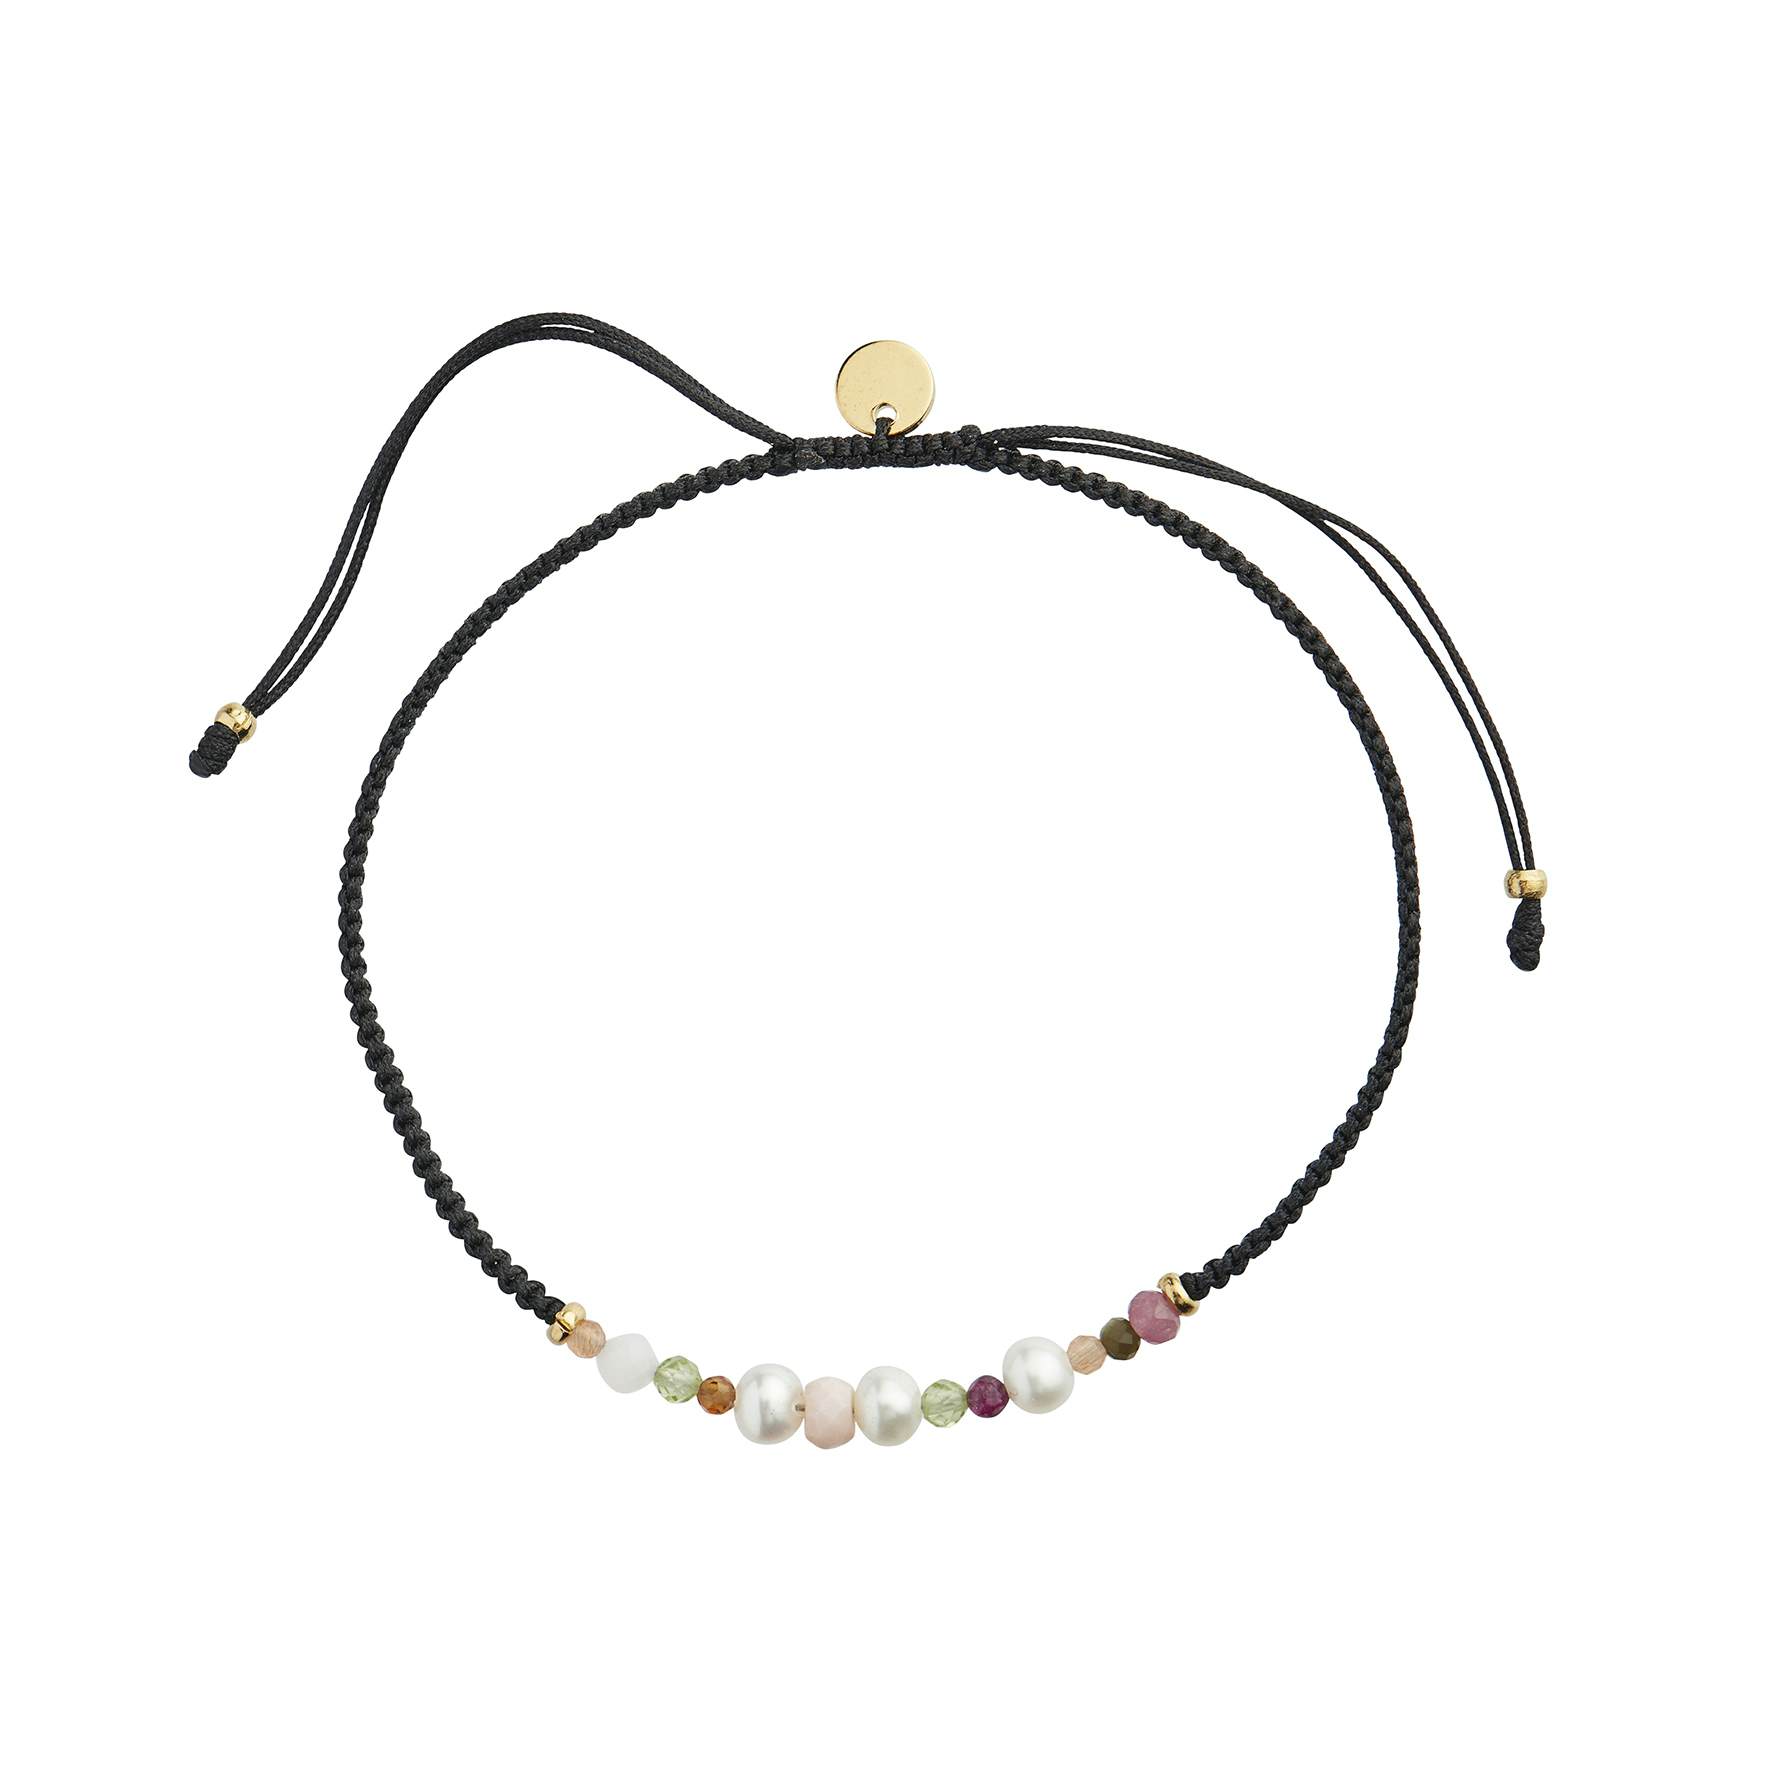 Candy Bracelet - White Forest Mix & Black Ribbon från STINE A Jewelry i Nylon